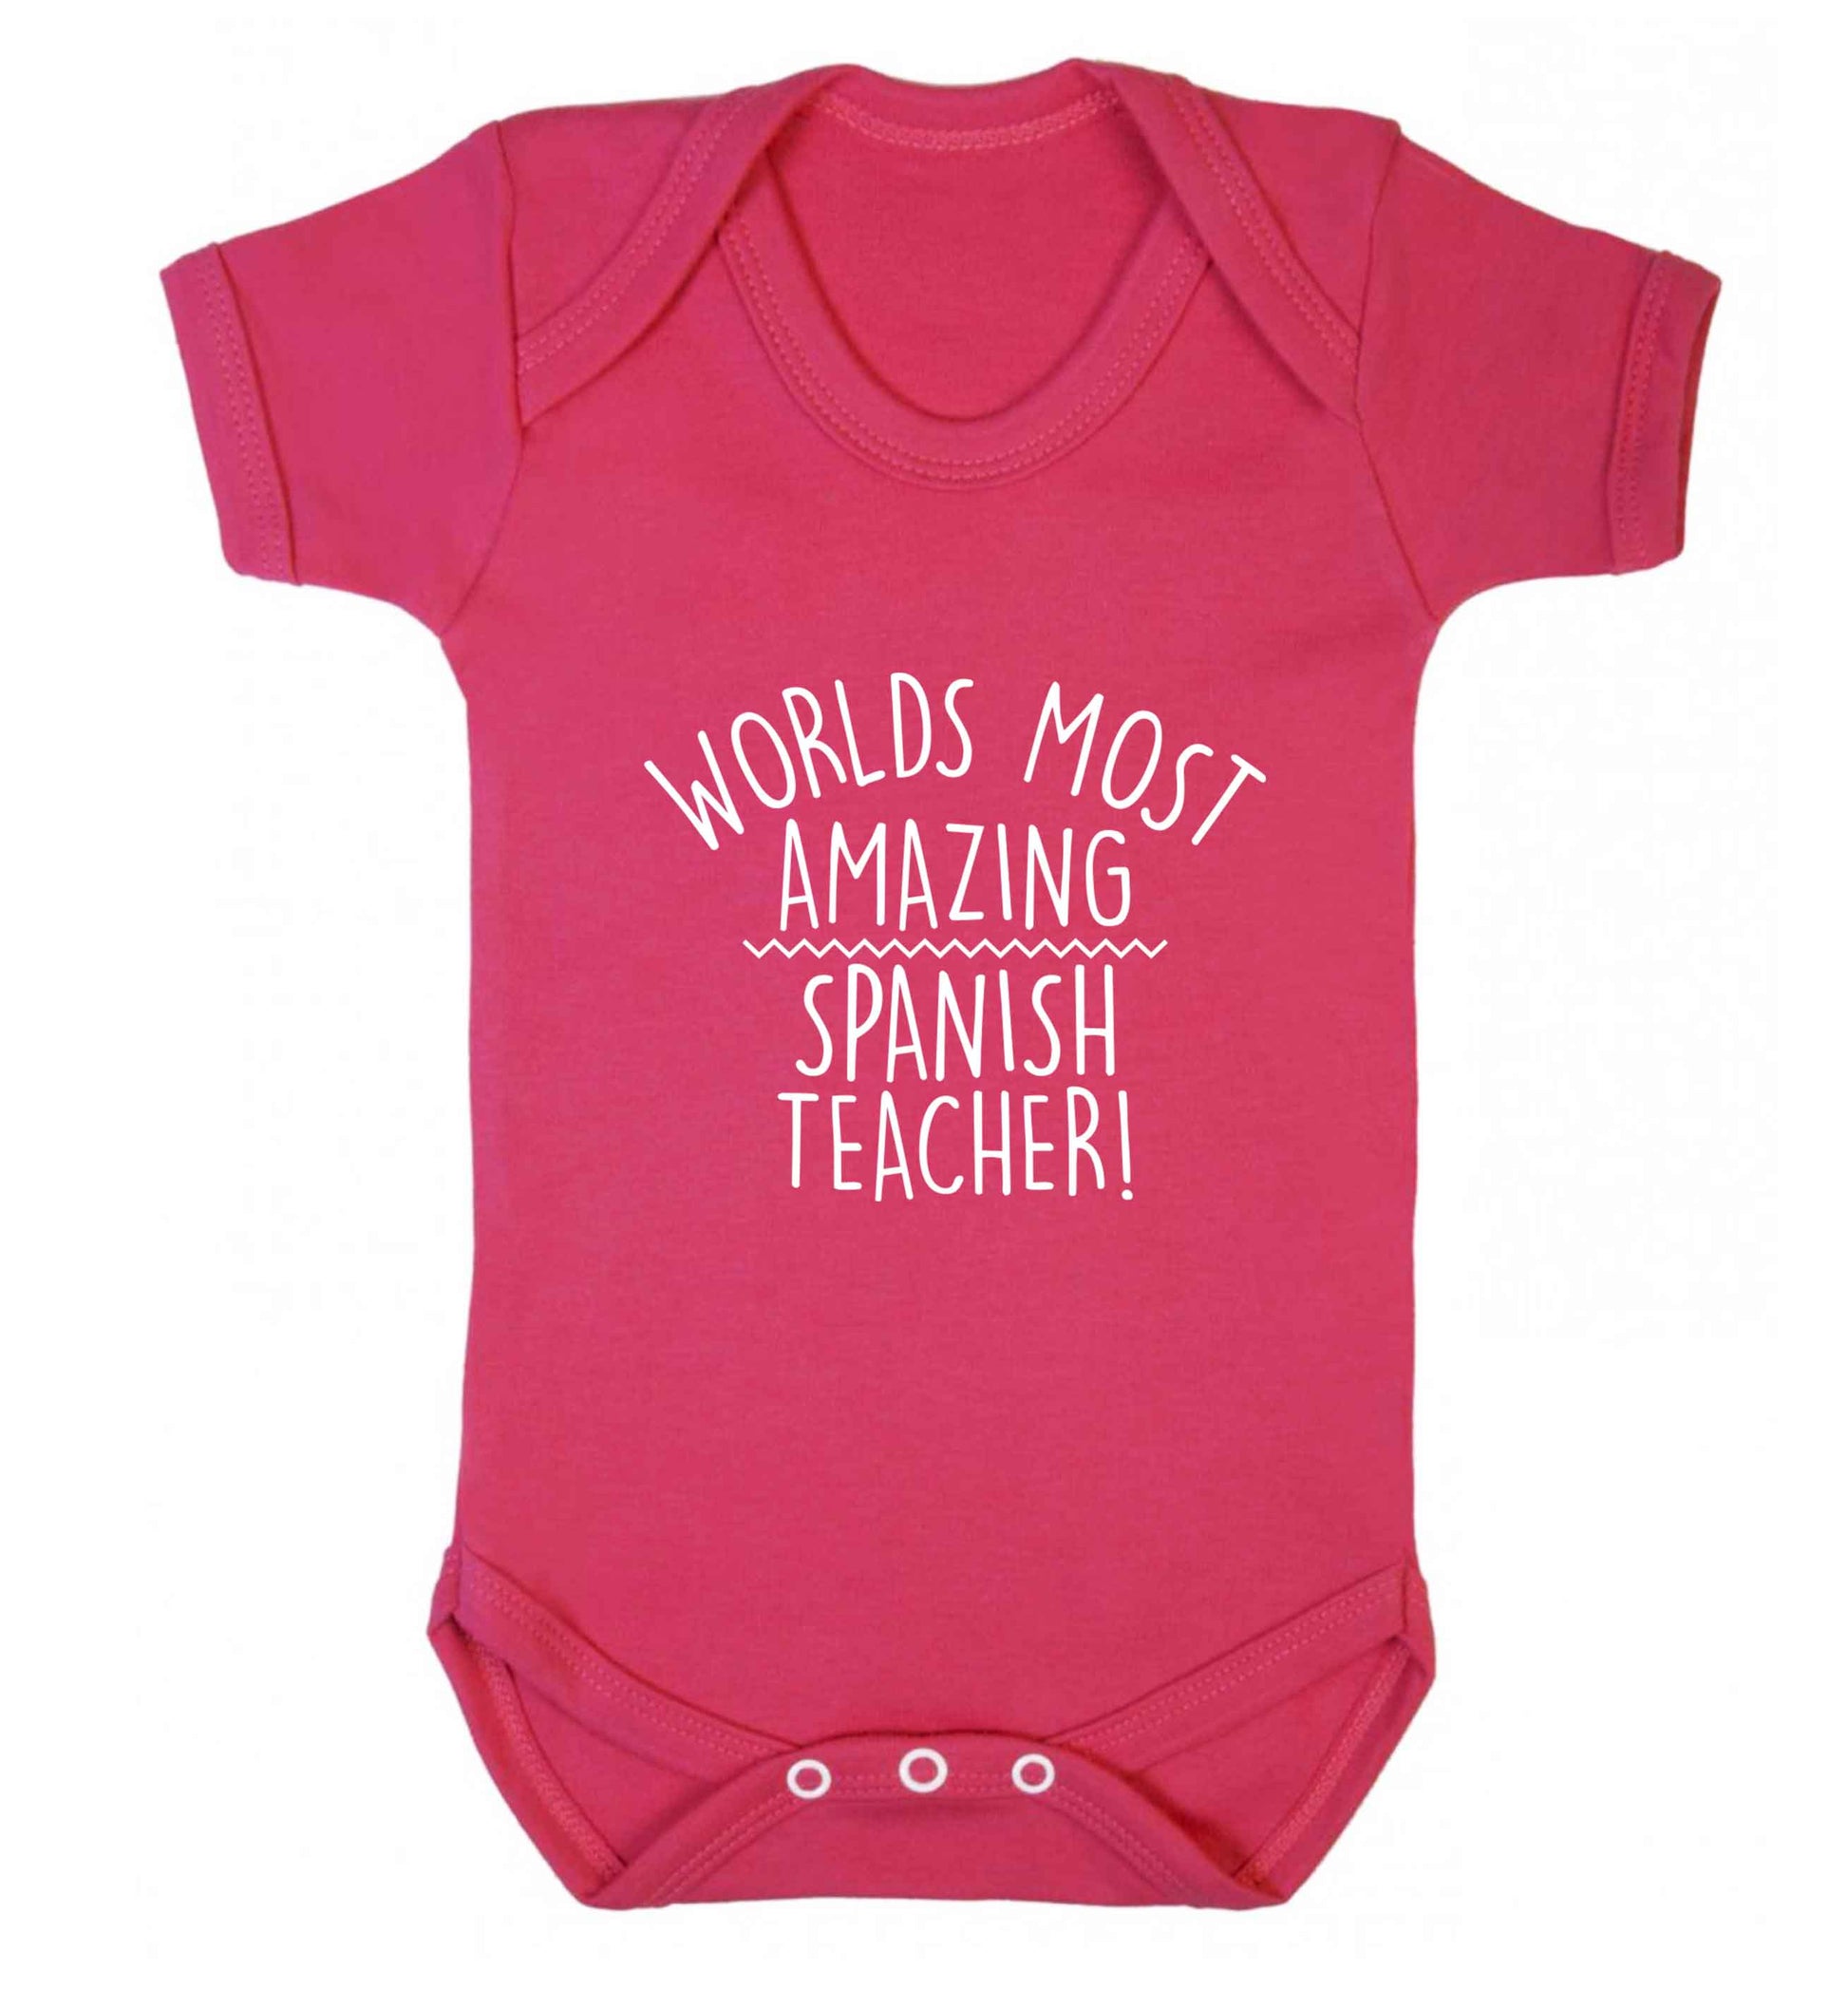 Worlds most amazing Spanish teacher baby vest dark pink 18-24 months